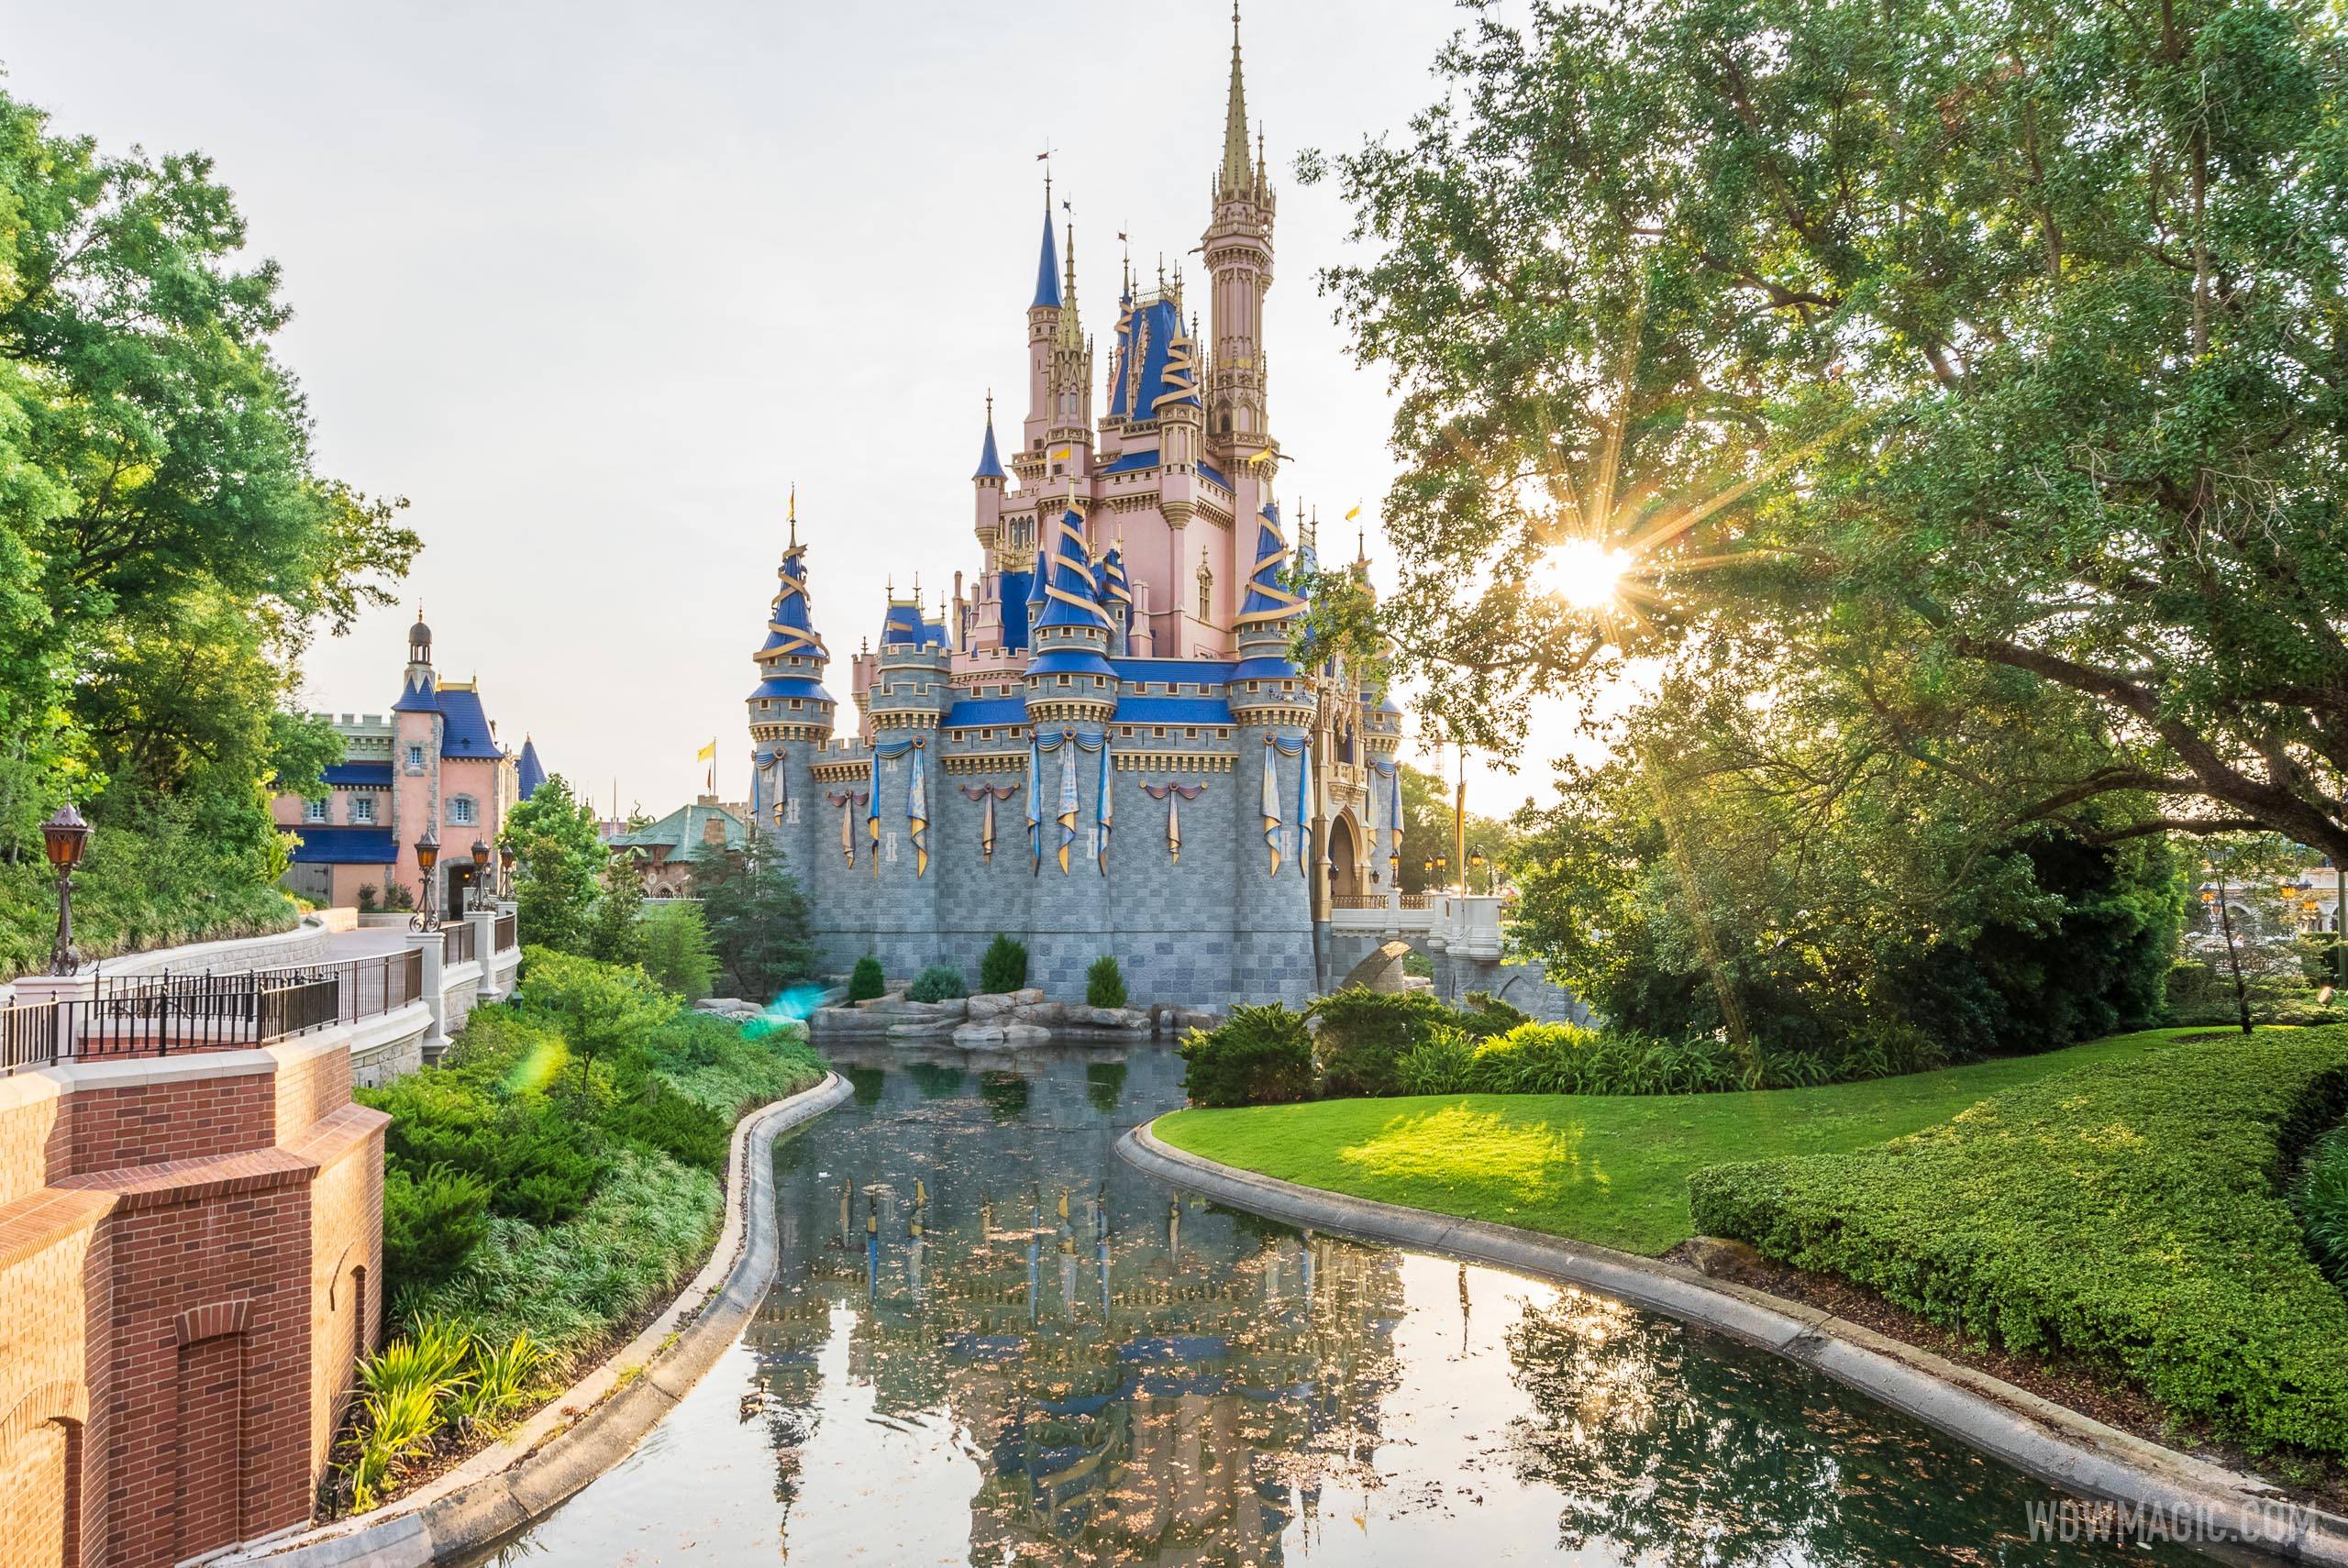 Vẻ đẹp kiêu sa của lâu đài Cinderella chắc chắn sẽ làm bạn say đắm từ cái nhìn đầu tiên. Hãy chiêm ngưỡng kiệt tác kiến trúc cổ từ những năm đầu của Walt Disney World và khám phá những khoảnh khắc đáng nhớ với gia đình và bạn bè.